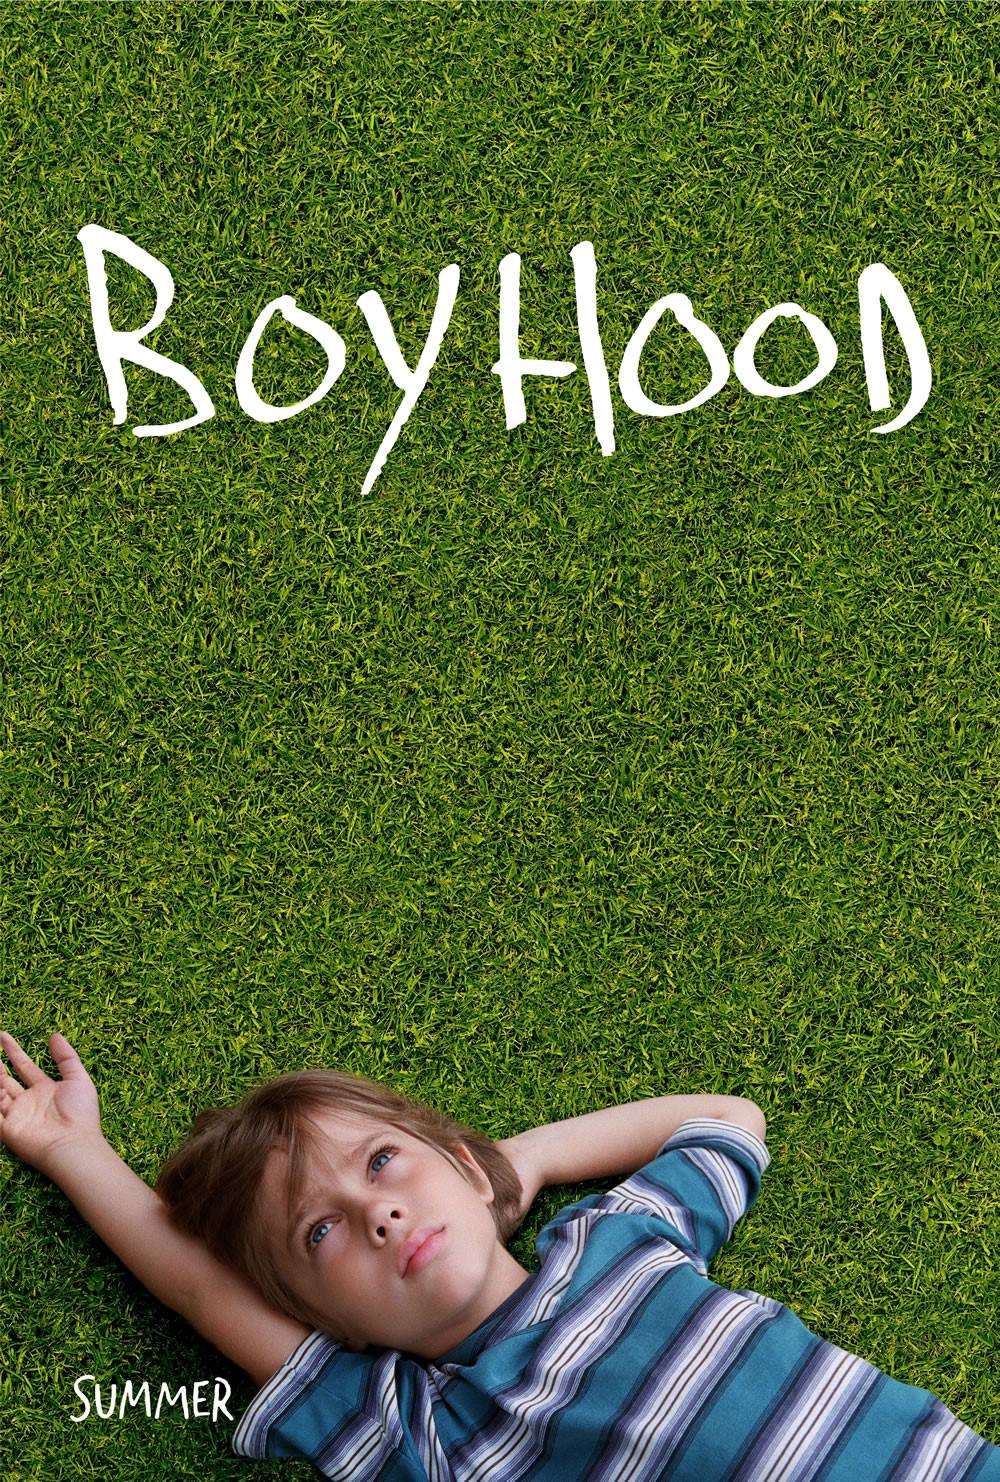 boyhood-teaser-poster